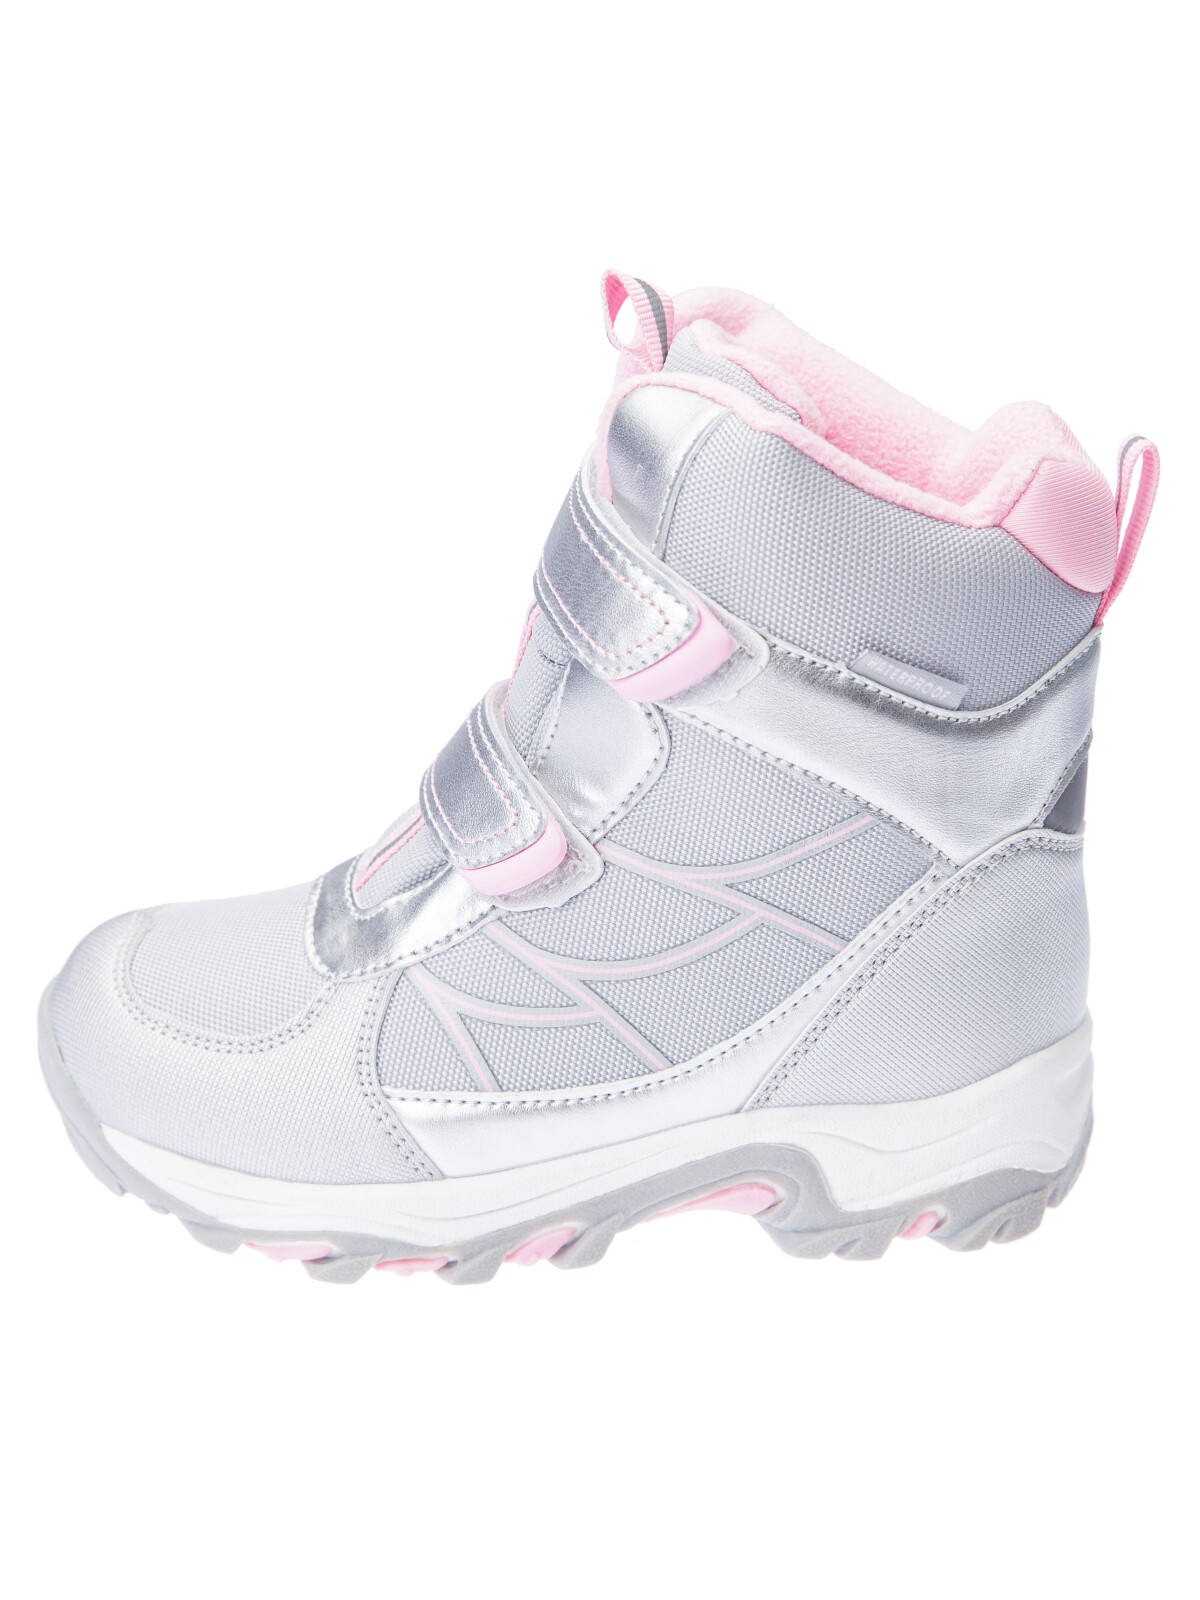 Зимние мембранные ботинки для девочки PlayToday, серебро,светло-розовый, 26